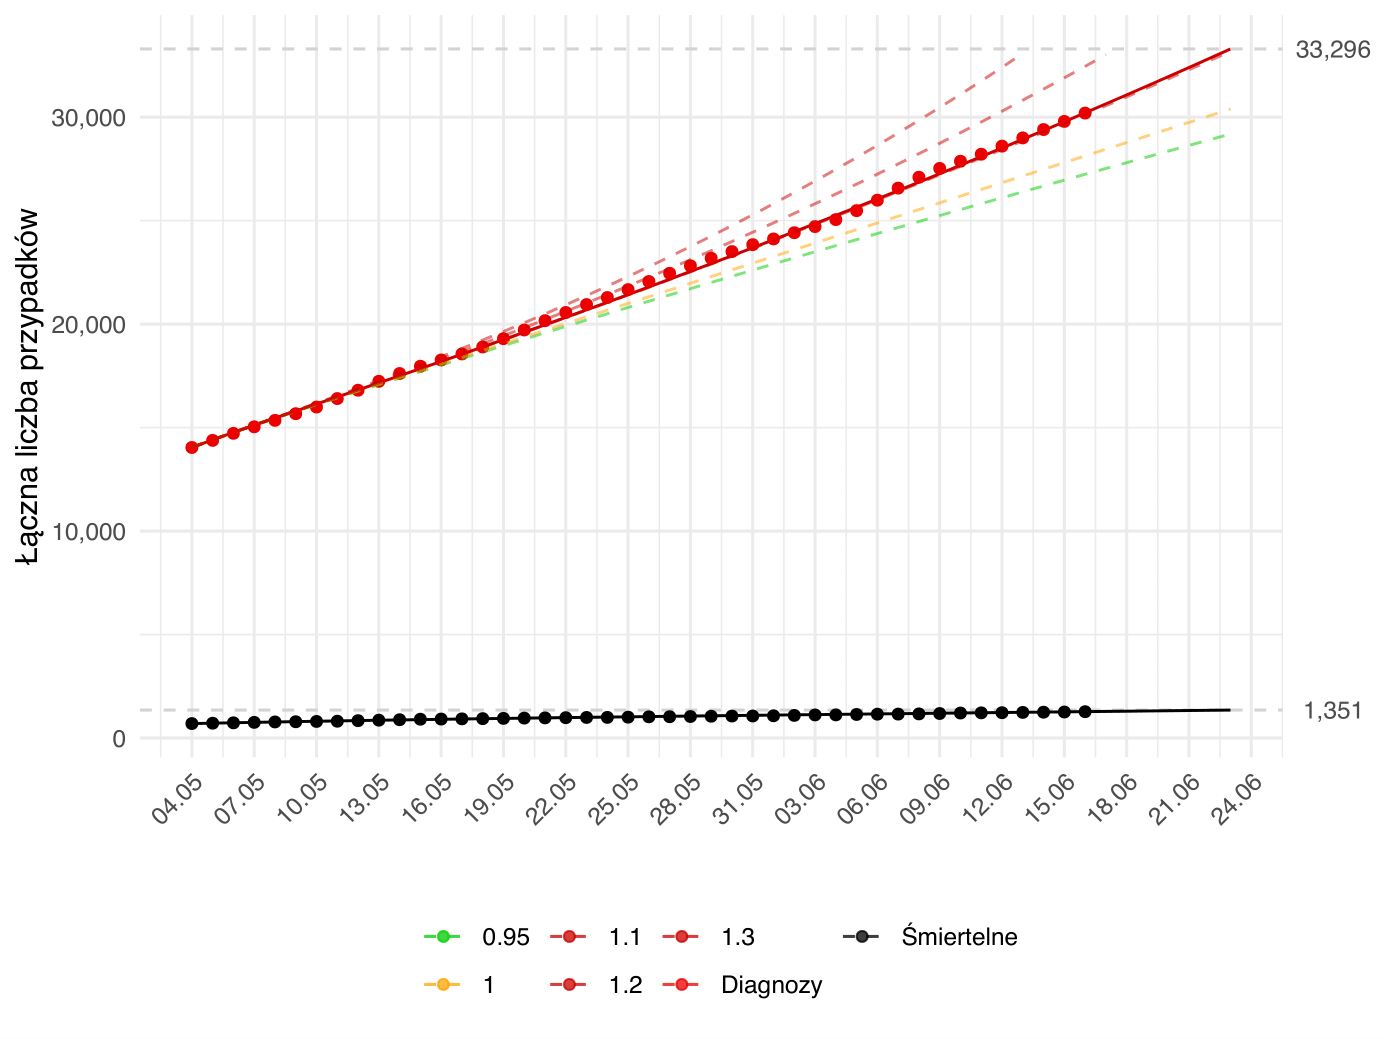 Prognoza krótkoterminowa liczby osób diagnozowanych i zgonów. Aktualna prognoza (linia ciągła) oparta na modelu dopasowanym zarówno względem parametru β - związanego z redukcją kontaktów społecznych, jak i γ<sup>-1</sup> - związanego z efektywnością strategii testowania. Kolorem czerwonym oznaczona jest łączna liczba rozpoznań aż do danego dnia, zielonym - łączna liczba wyzdrowień, a czarnym - zgonów. Kropki oznaczają obserwowane dane odpowiedniej kategorii. Dodatkowo, przerywane linie przedstawiają alternatywne prognozy zależne od poziomu parametru <i>R<sub>0</sub></i>, przy parametrze γ<sup>-1</sup> (interpretowanym jako długość okresu zakaźności) ustalonym na wartość estymowaną w oparciu o dane do dnia przygotowania raportu. Kolor przerywanych linii odpowiada intensywności epidemii zgodnej z wartością parametru <i>R<sub>0</sub></i> (zielona - podkrytyczna, żółta - stan endemiczny, czerwona - nadkrytyczna). Model został dopasowany do danych od 04.05.